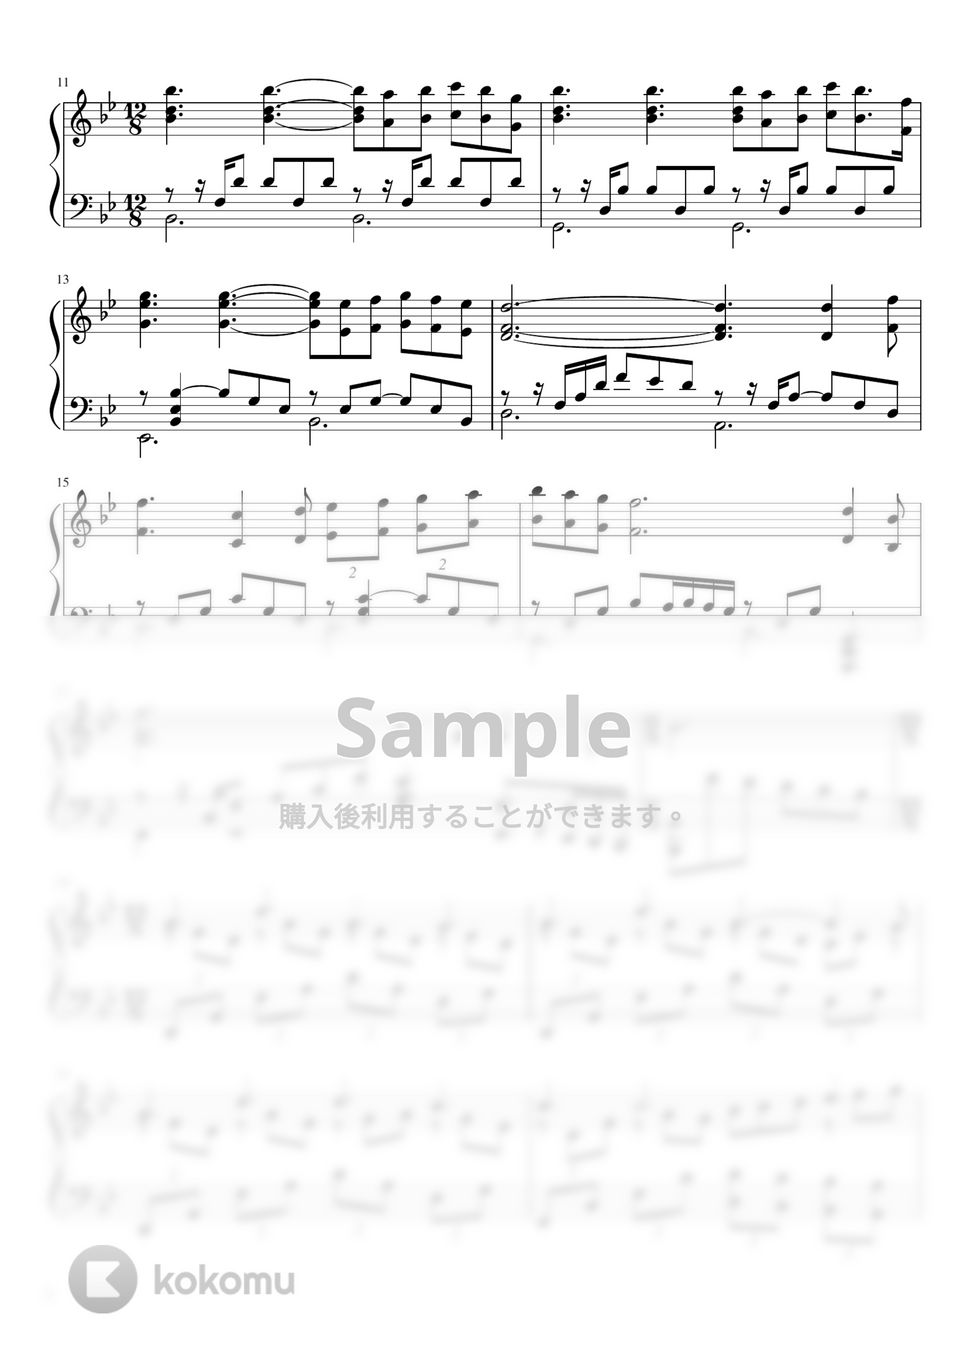 アンドリュー・ロイド・ウェーバー - ミュージカル「キャッツ」より MEMORY (ピアノソロ) by 大響